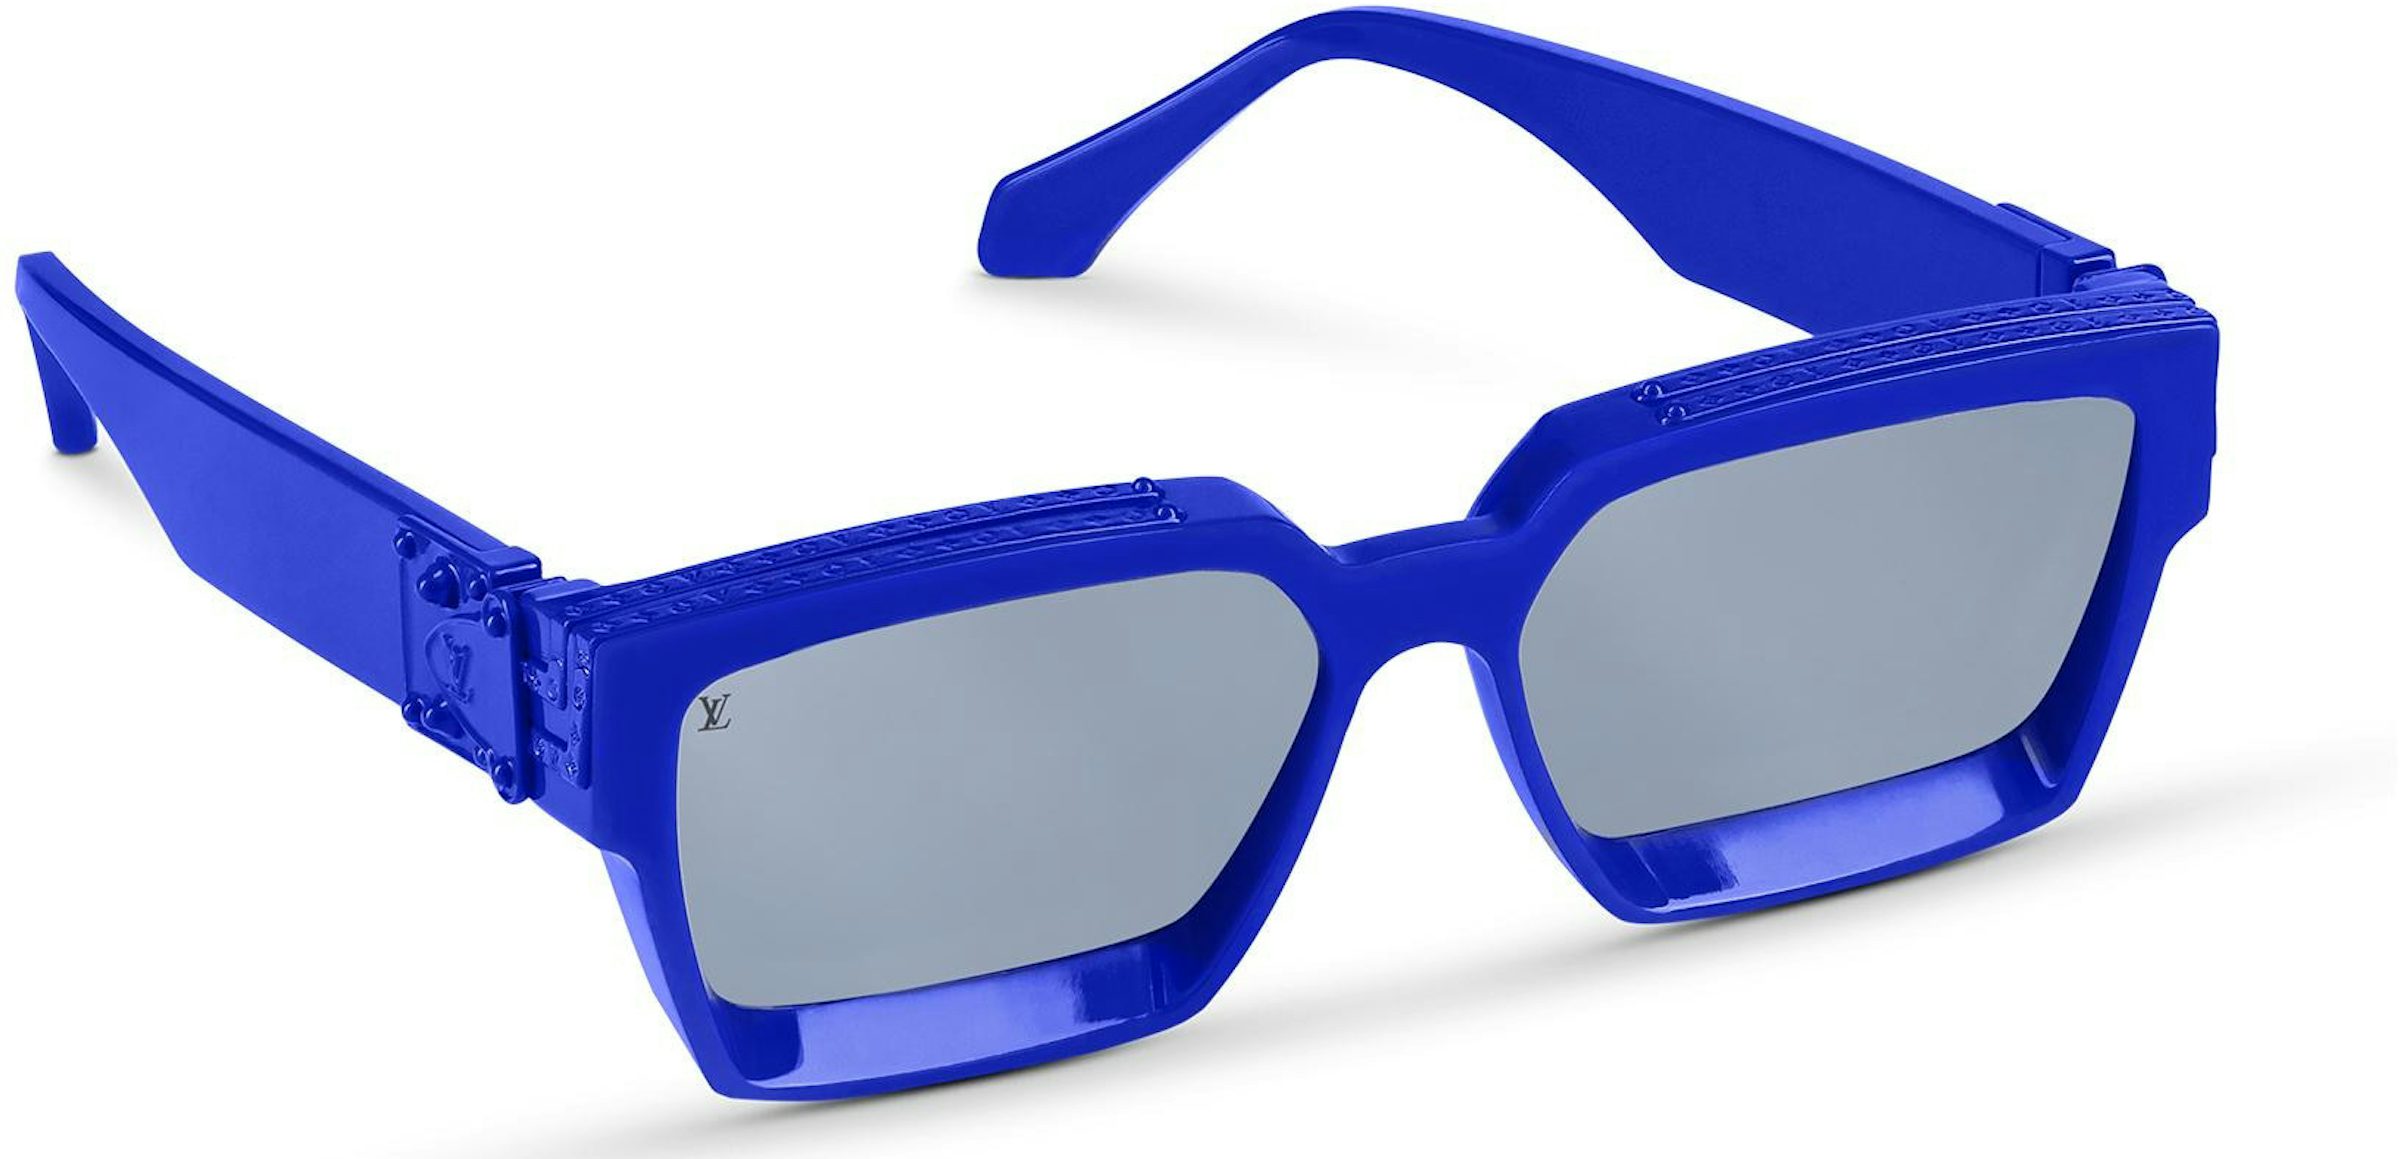 Louis Vuitton Mens Sunglasses, Blue